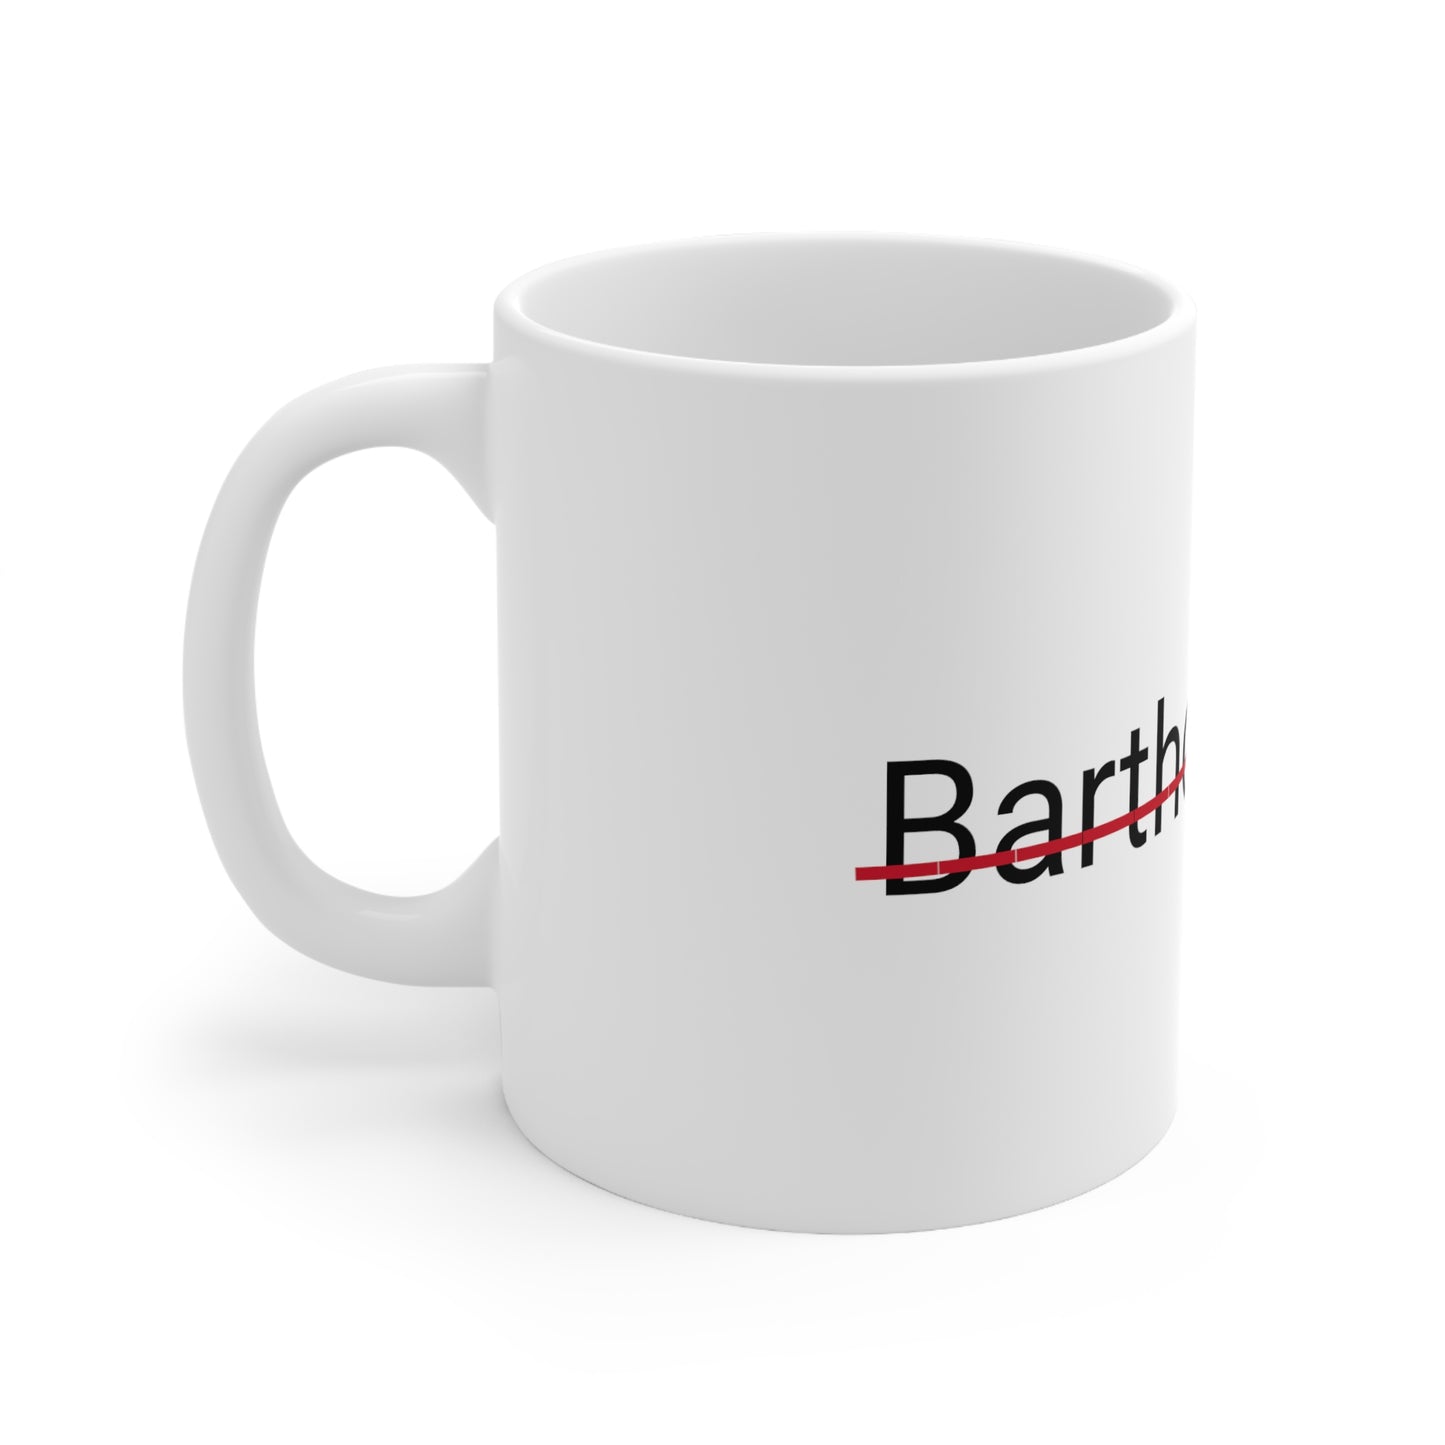 Bartholomew not my name coffee Mug 11oz